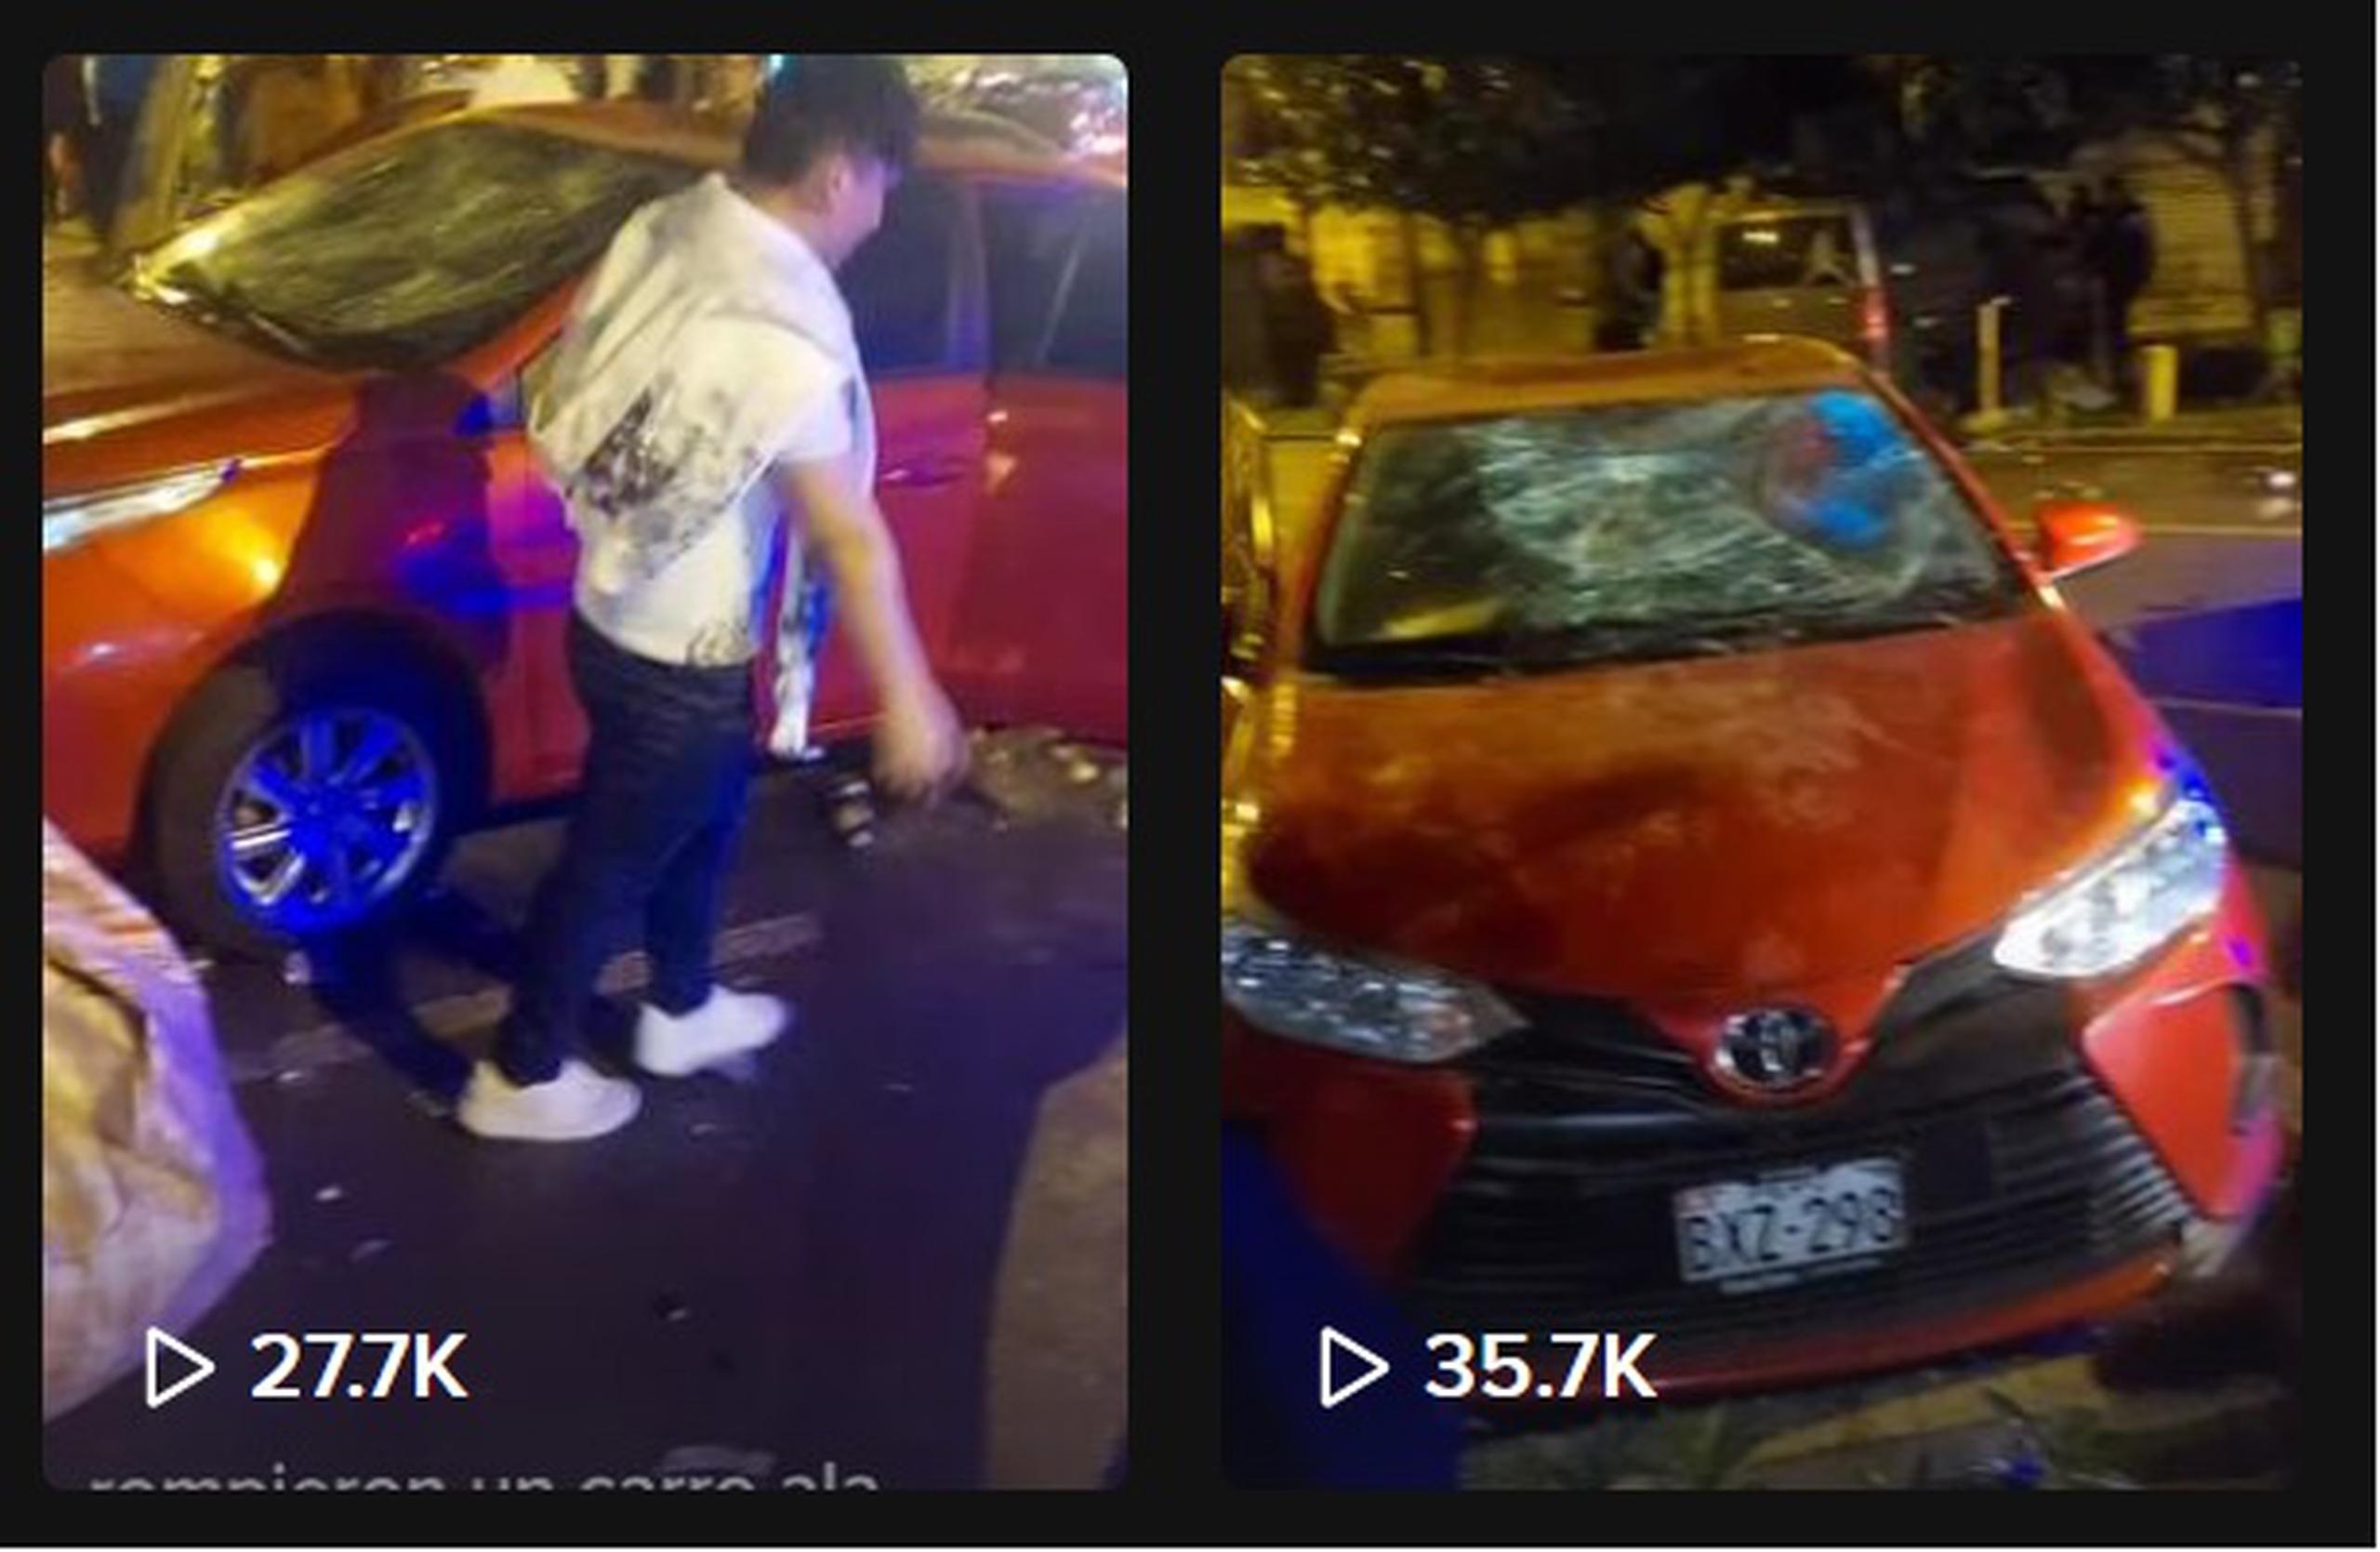 El pasado domingo, 20 de noviembre, el dueño del vehículo dañado, Moises Tinoco, anunció por medio de Tiktok una fiesta para recaudar fondos y así reparar los daños de auto, pues los responsables “no se quieren hacer cargo”.